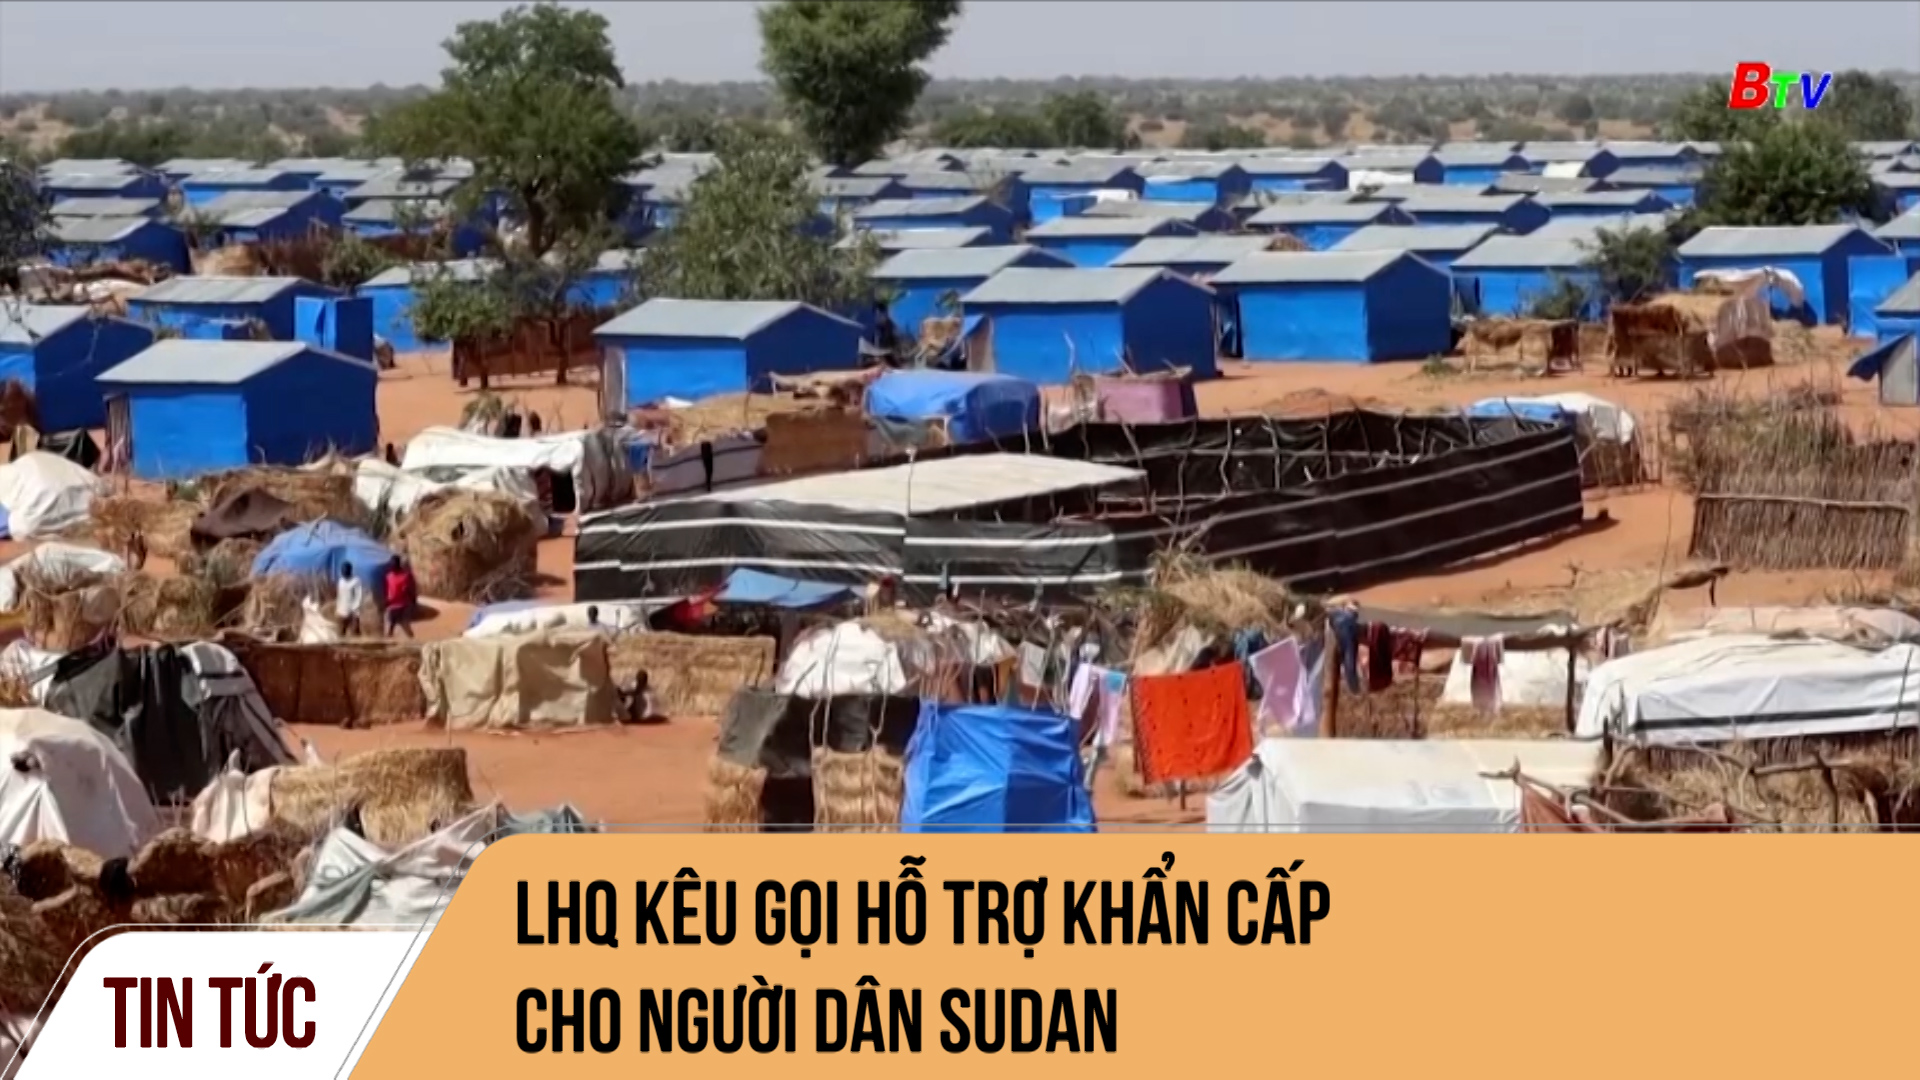 LHQ kêu gọi hỗ trợ khẩn cấp cho người dân Sudan